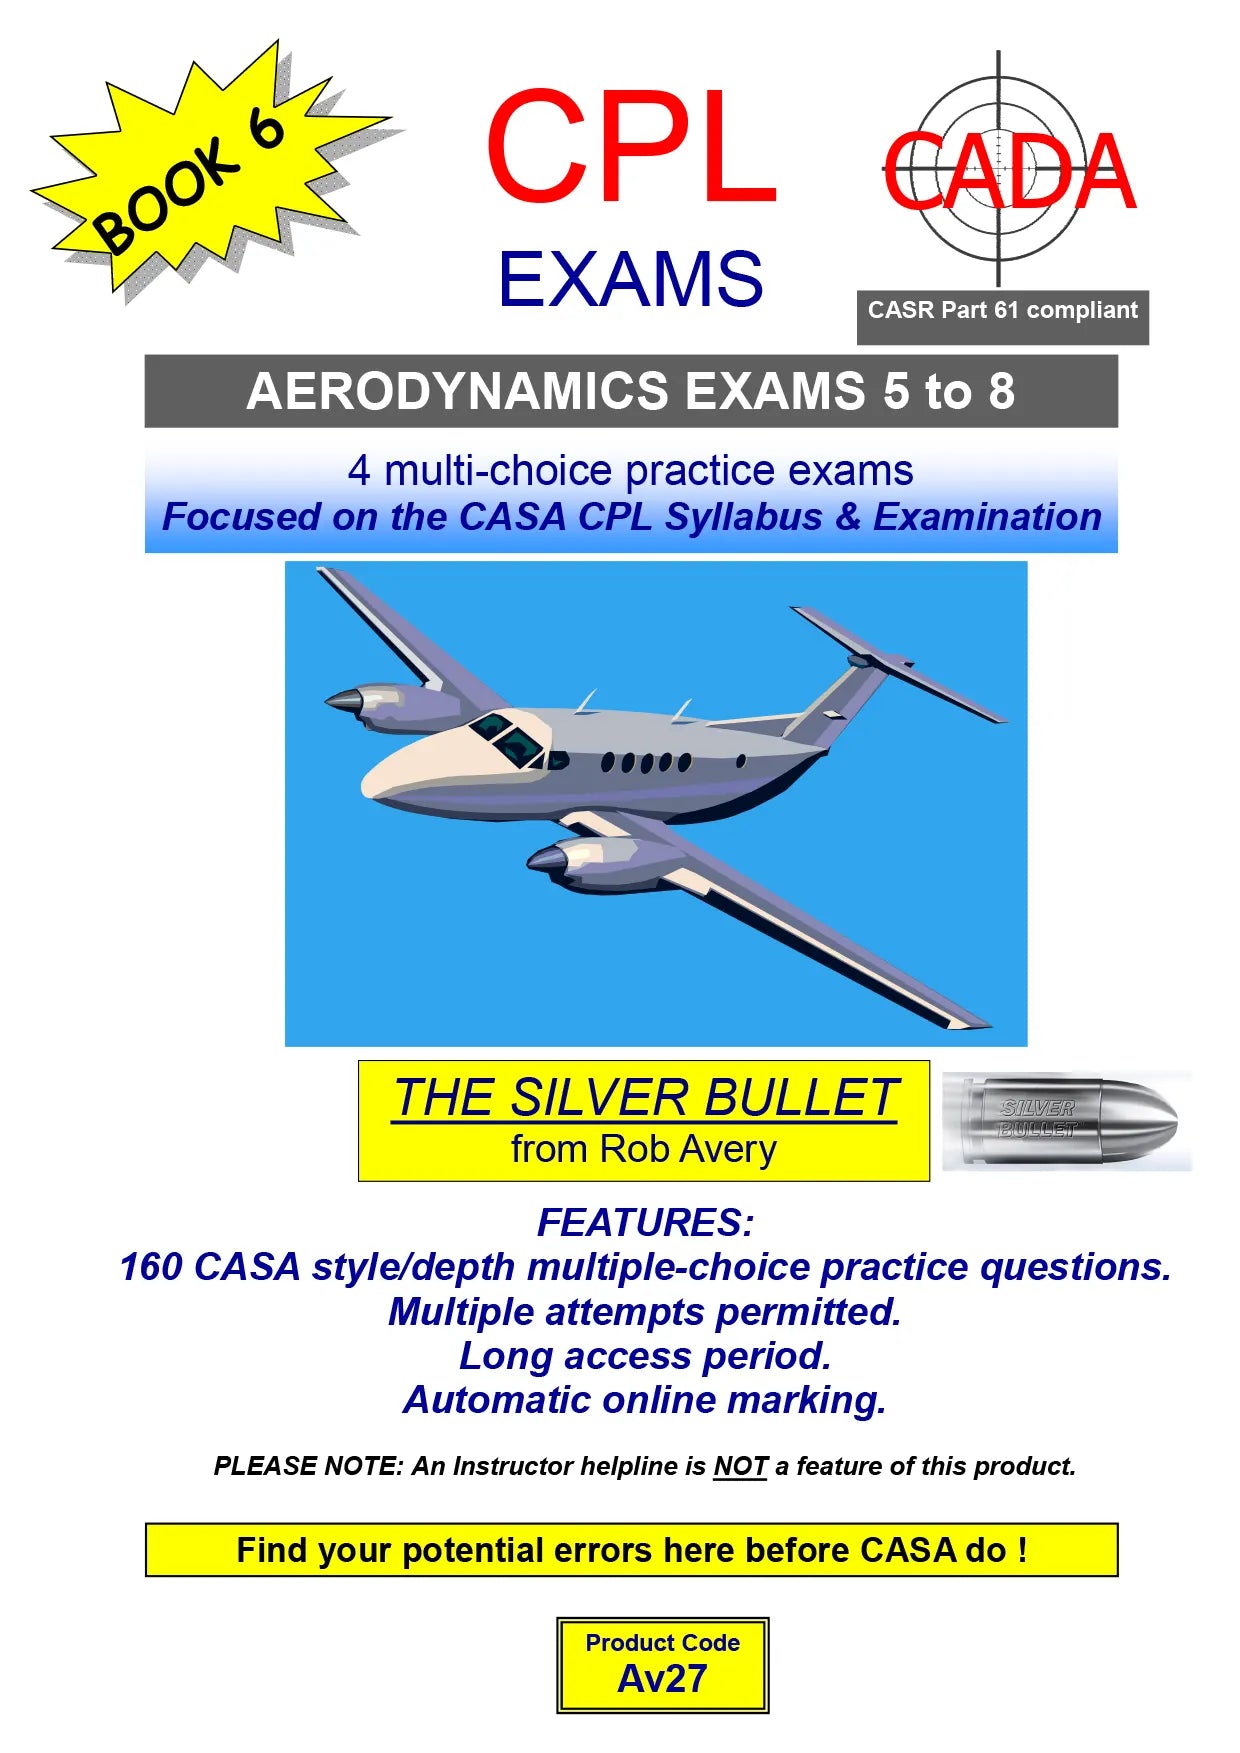 4 CPL Aerodynamics Practice Exams 5 to 8